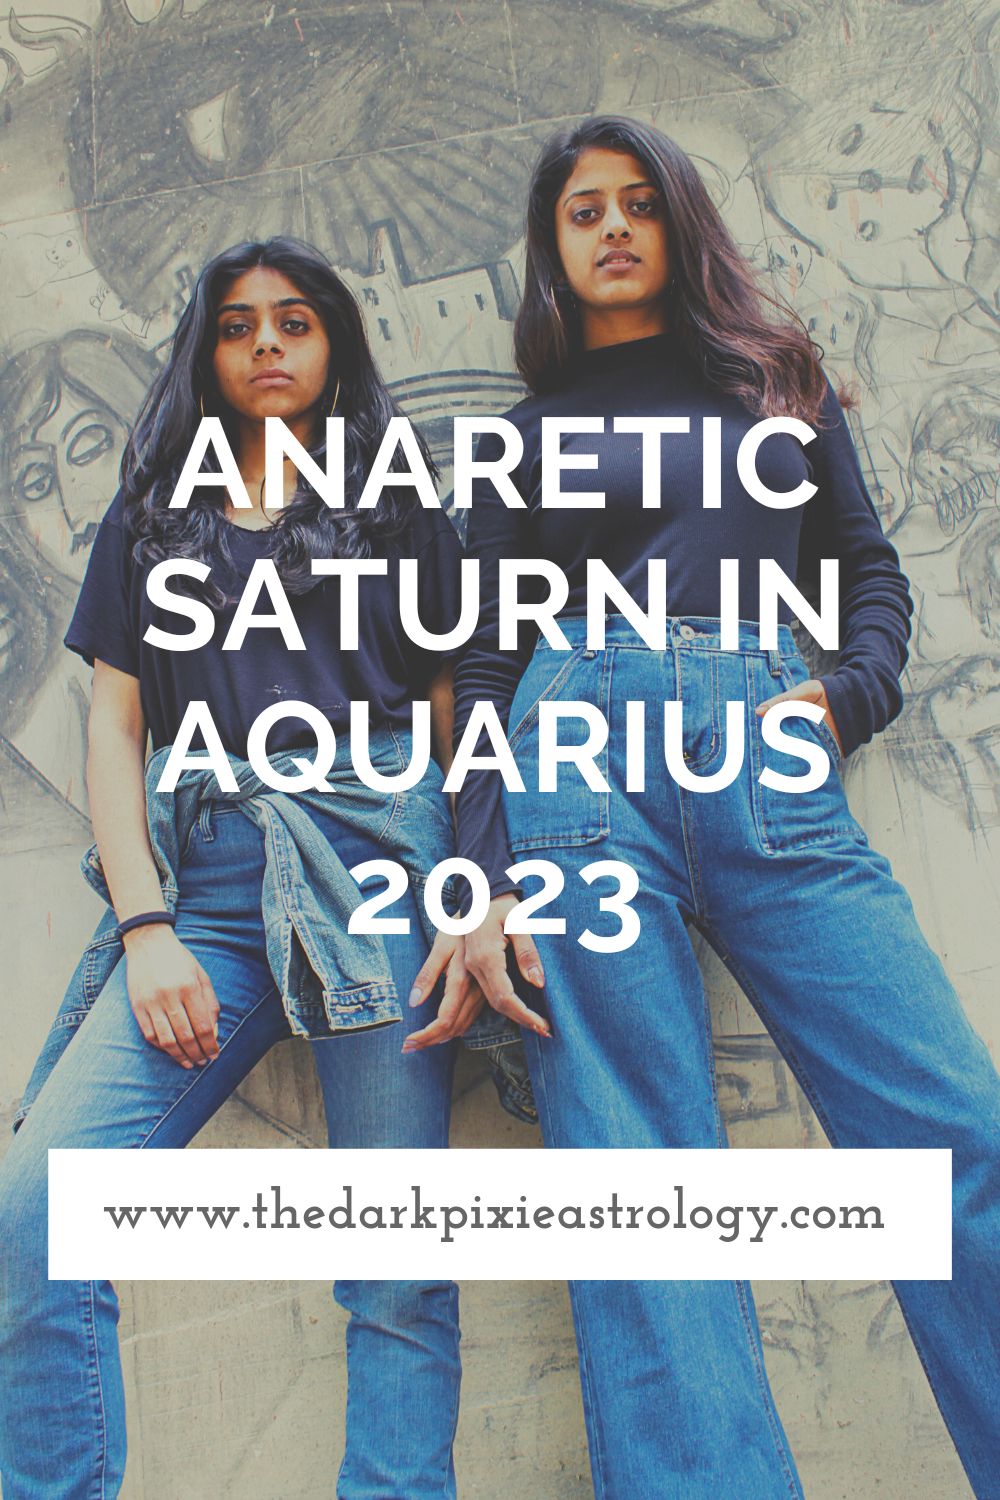 Anaretic Saturn in Aquarius 2023 - The Dark Pixie Astrology